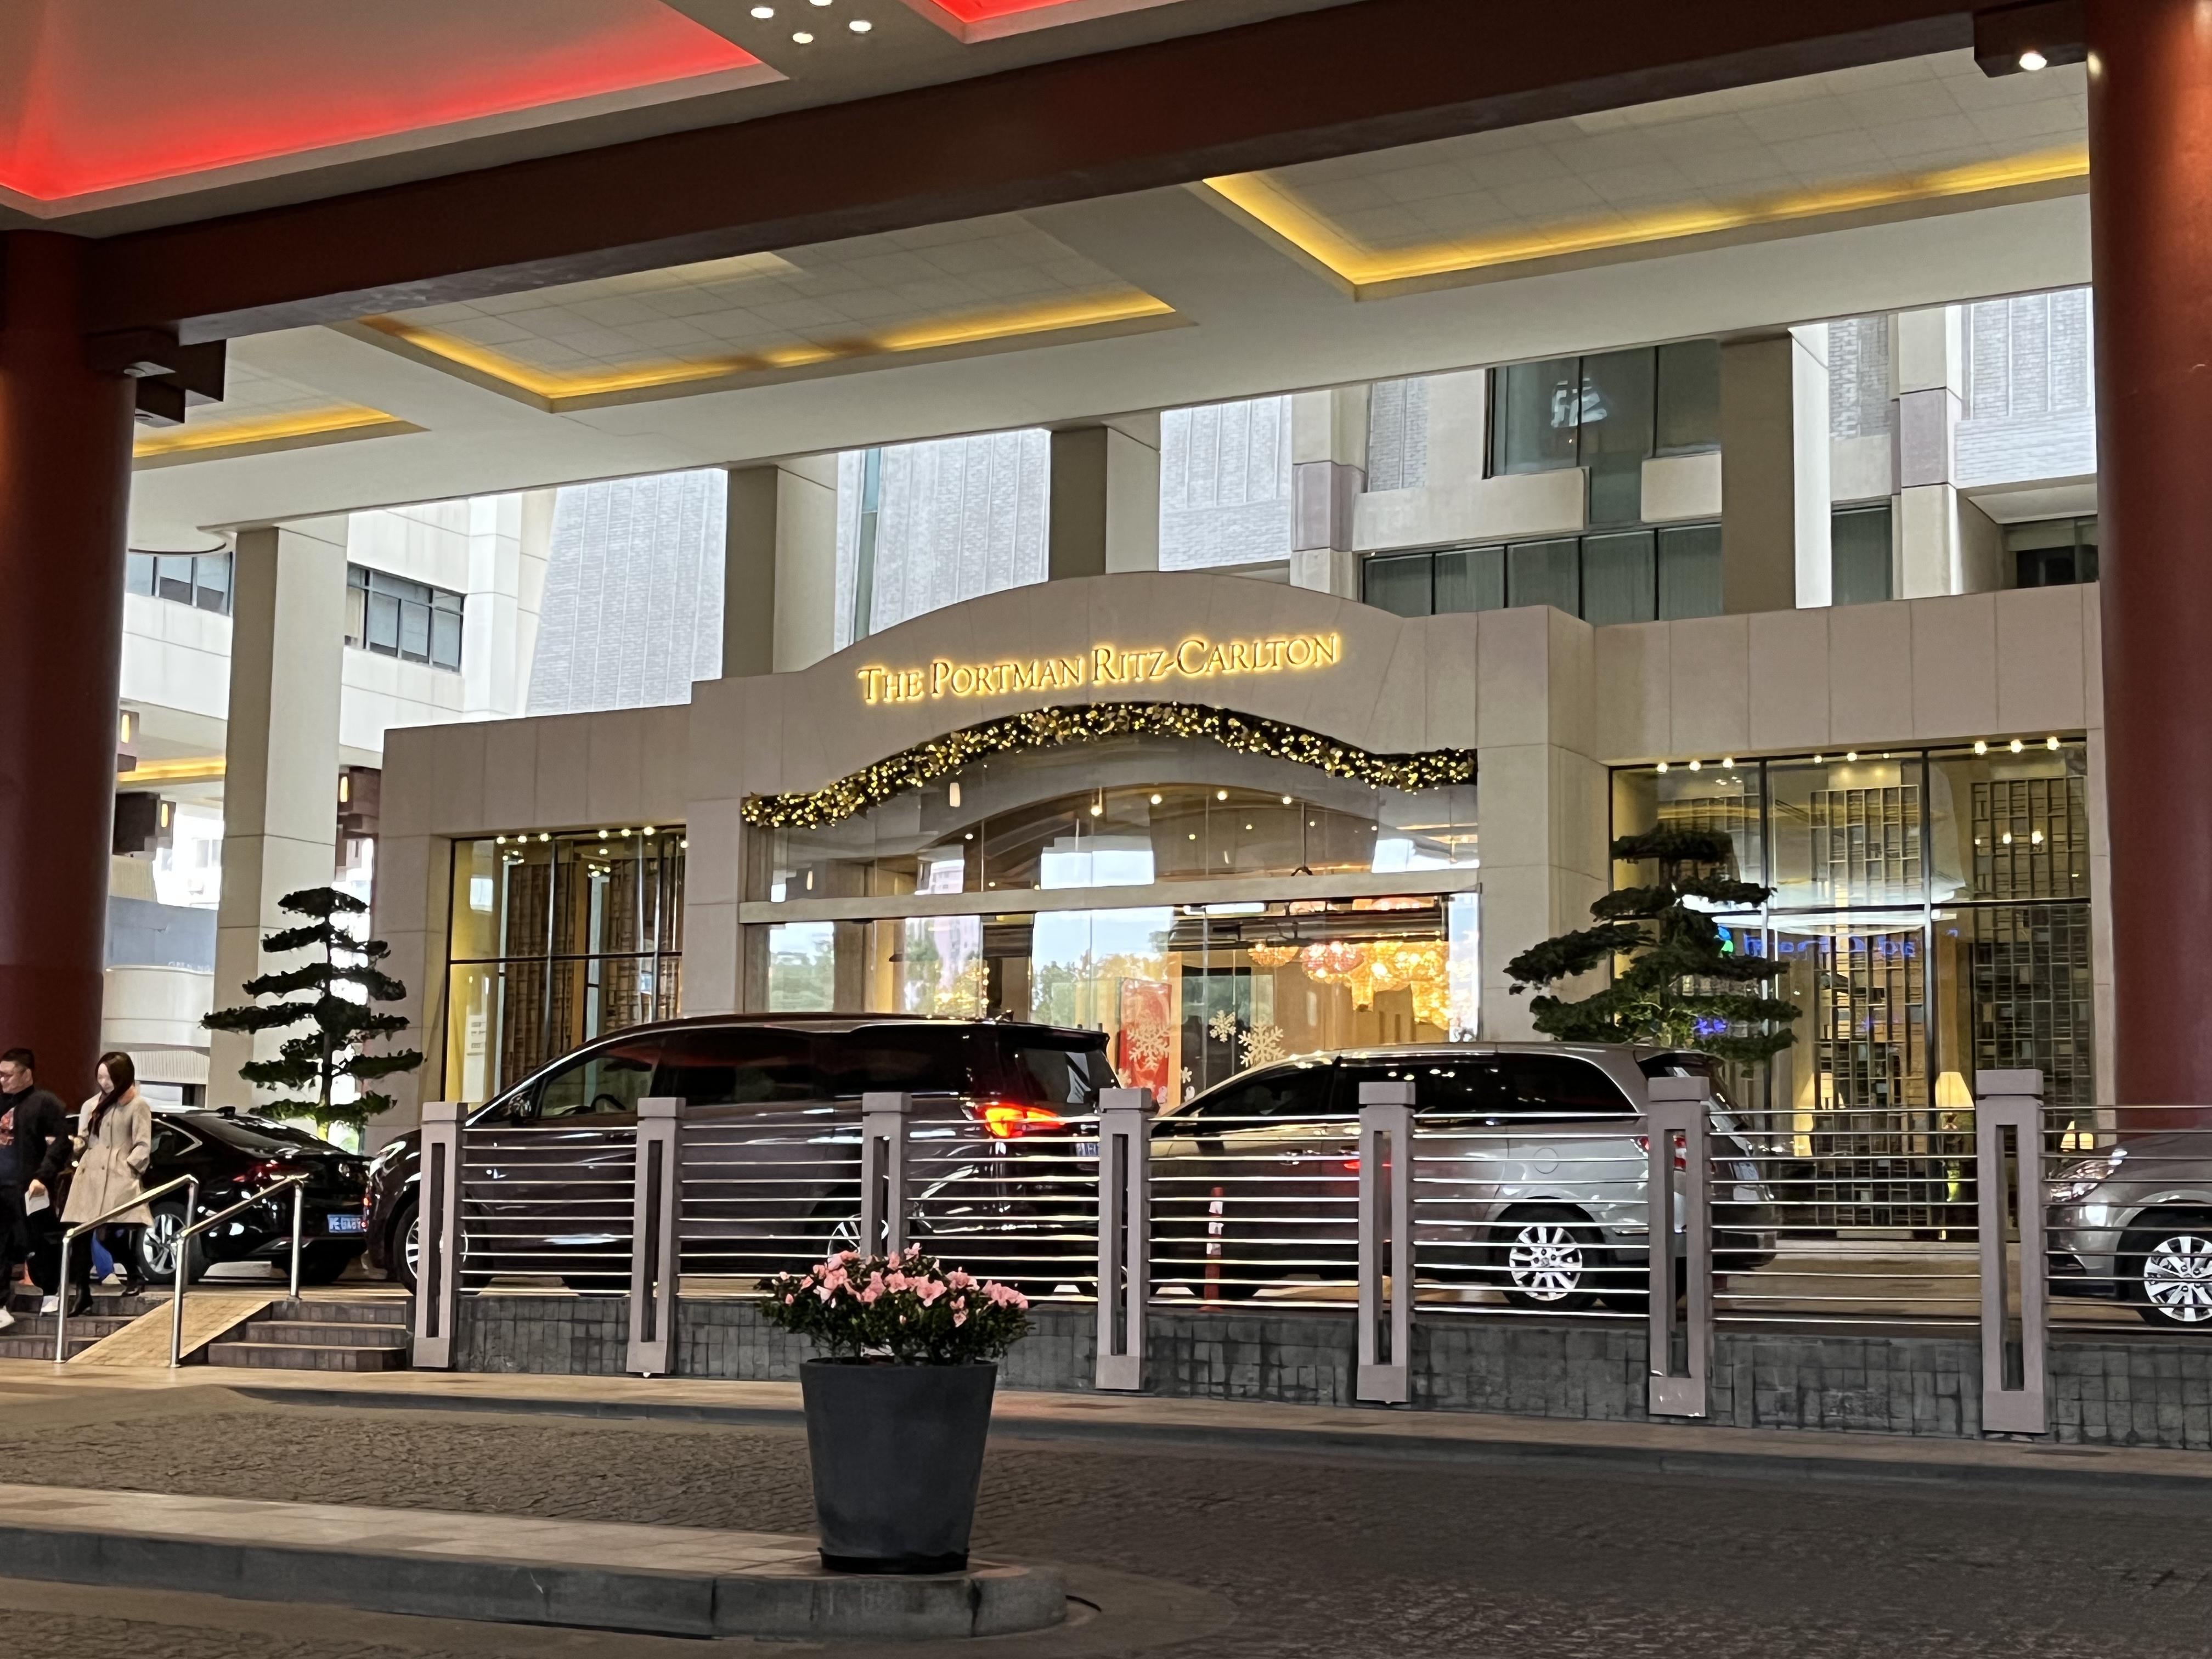 性价比无敌的元旦体验— 上海波特曼丽思卡尔顿酒店体验